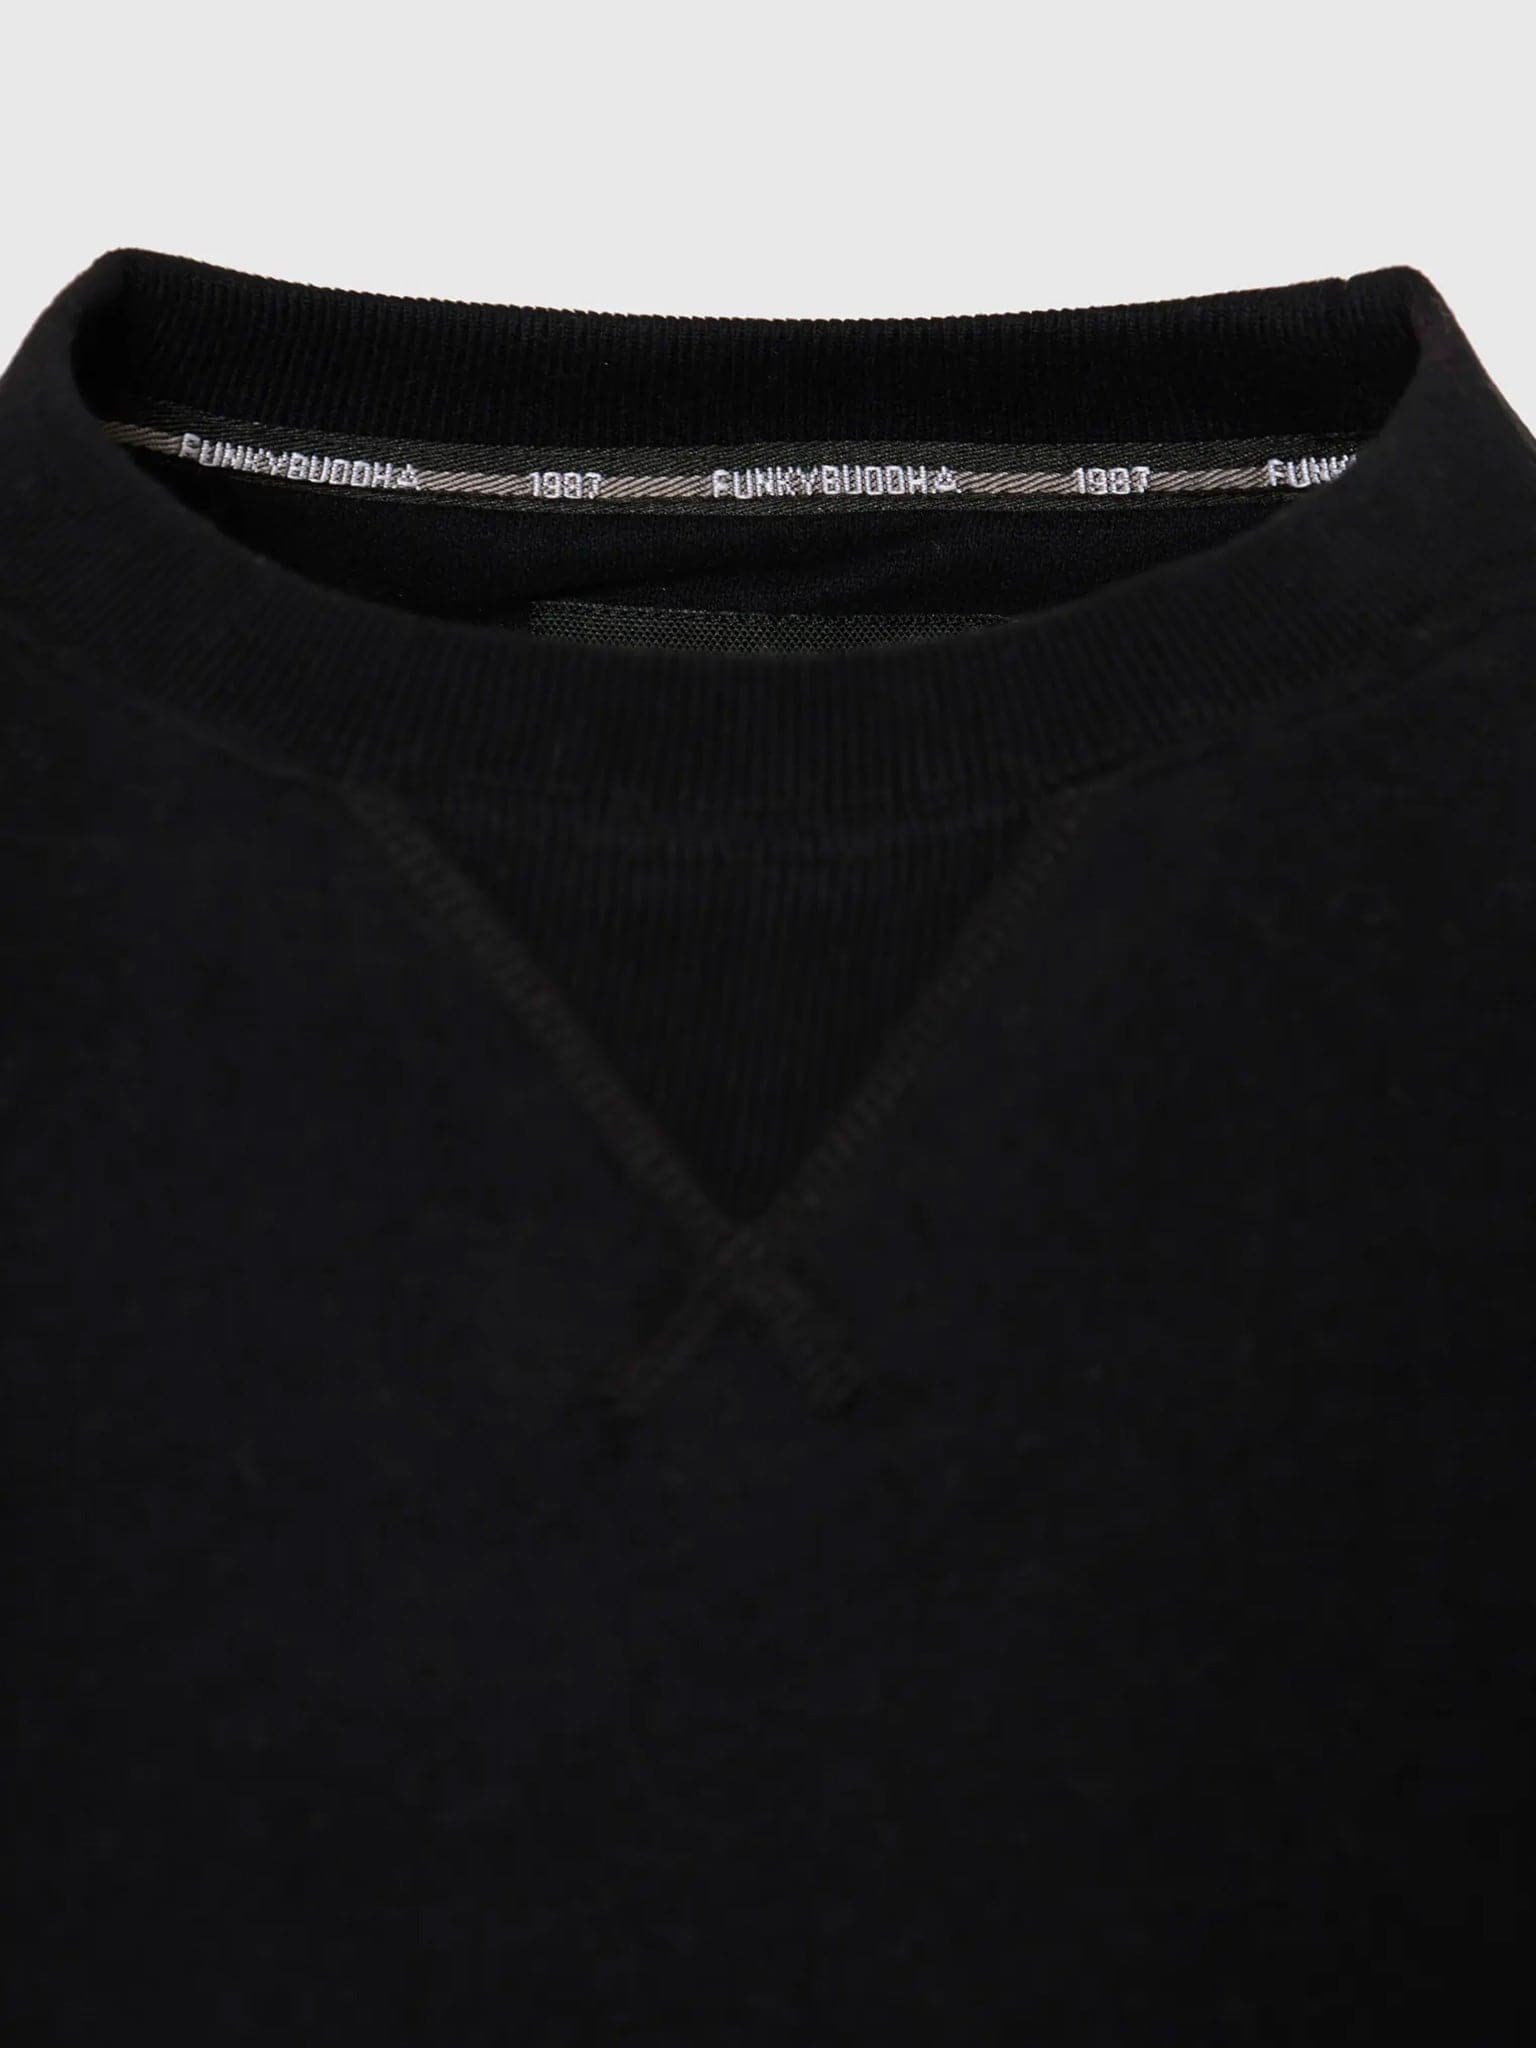 Ανδρική μπλούζα φούτερ | FBM008-003-06